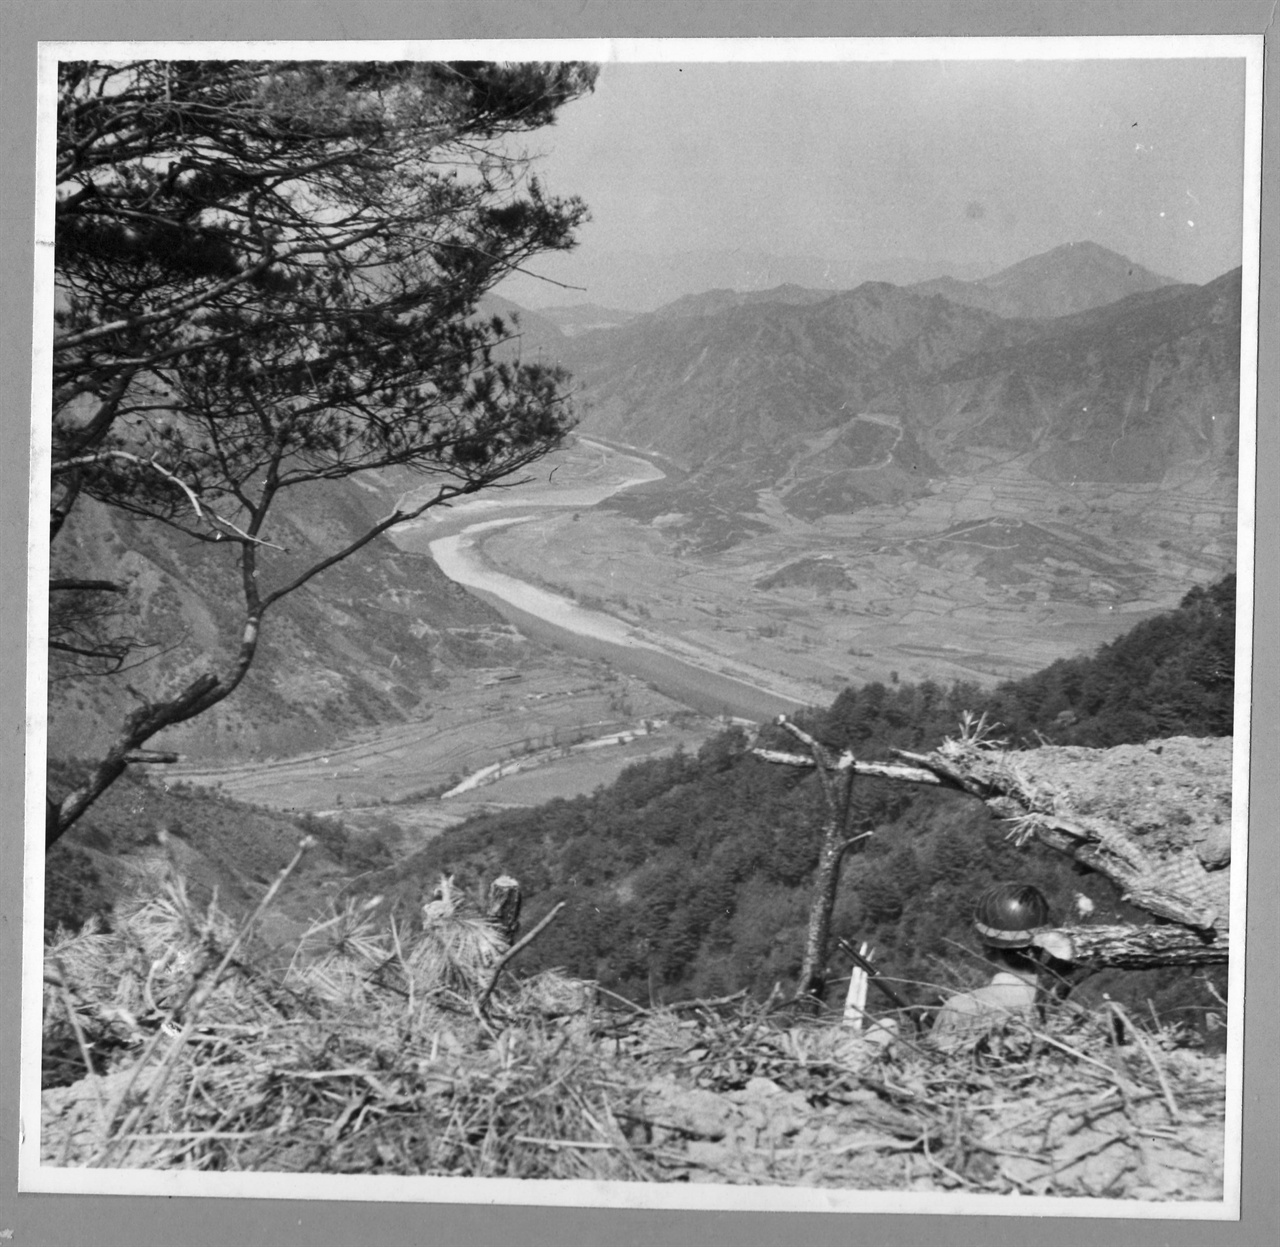 1. 한국전쟁 발발 직전. 국군이 38선 부근 초소에서 적진을 경계하고 있다(1950. 6.).